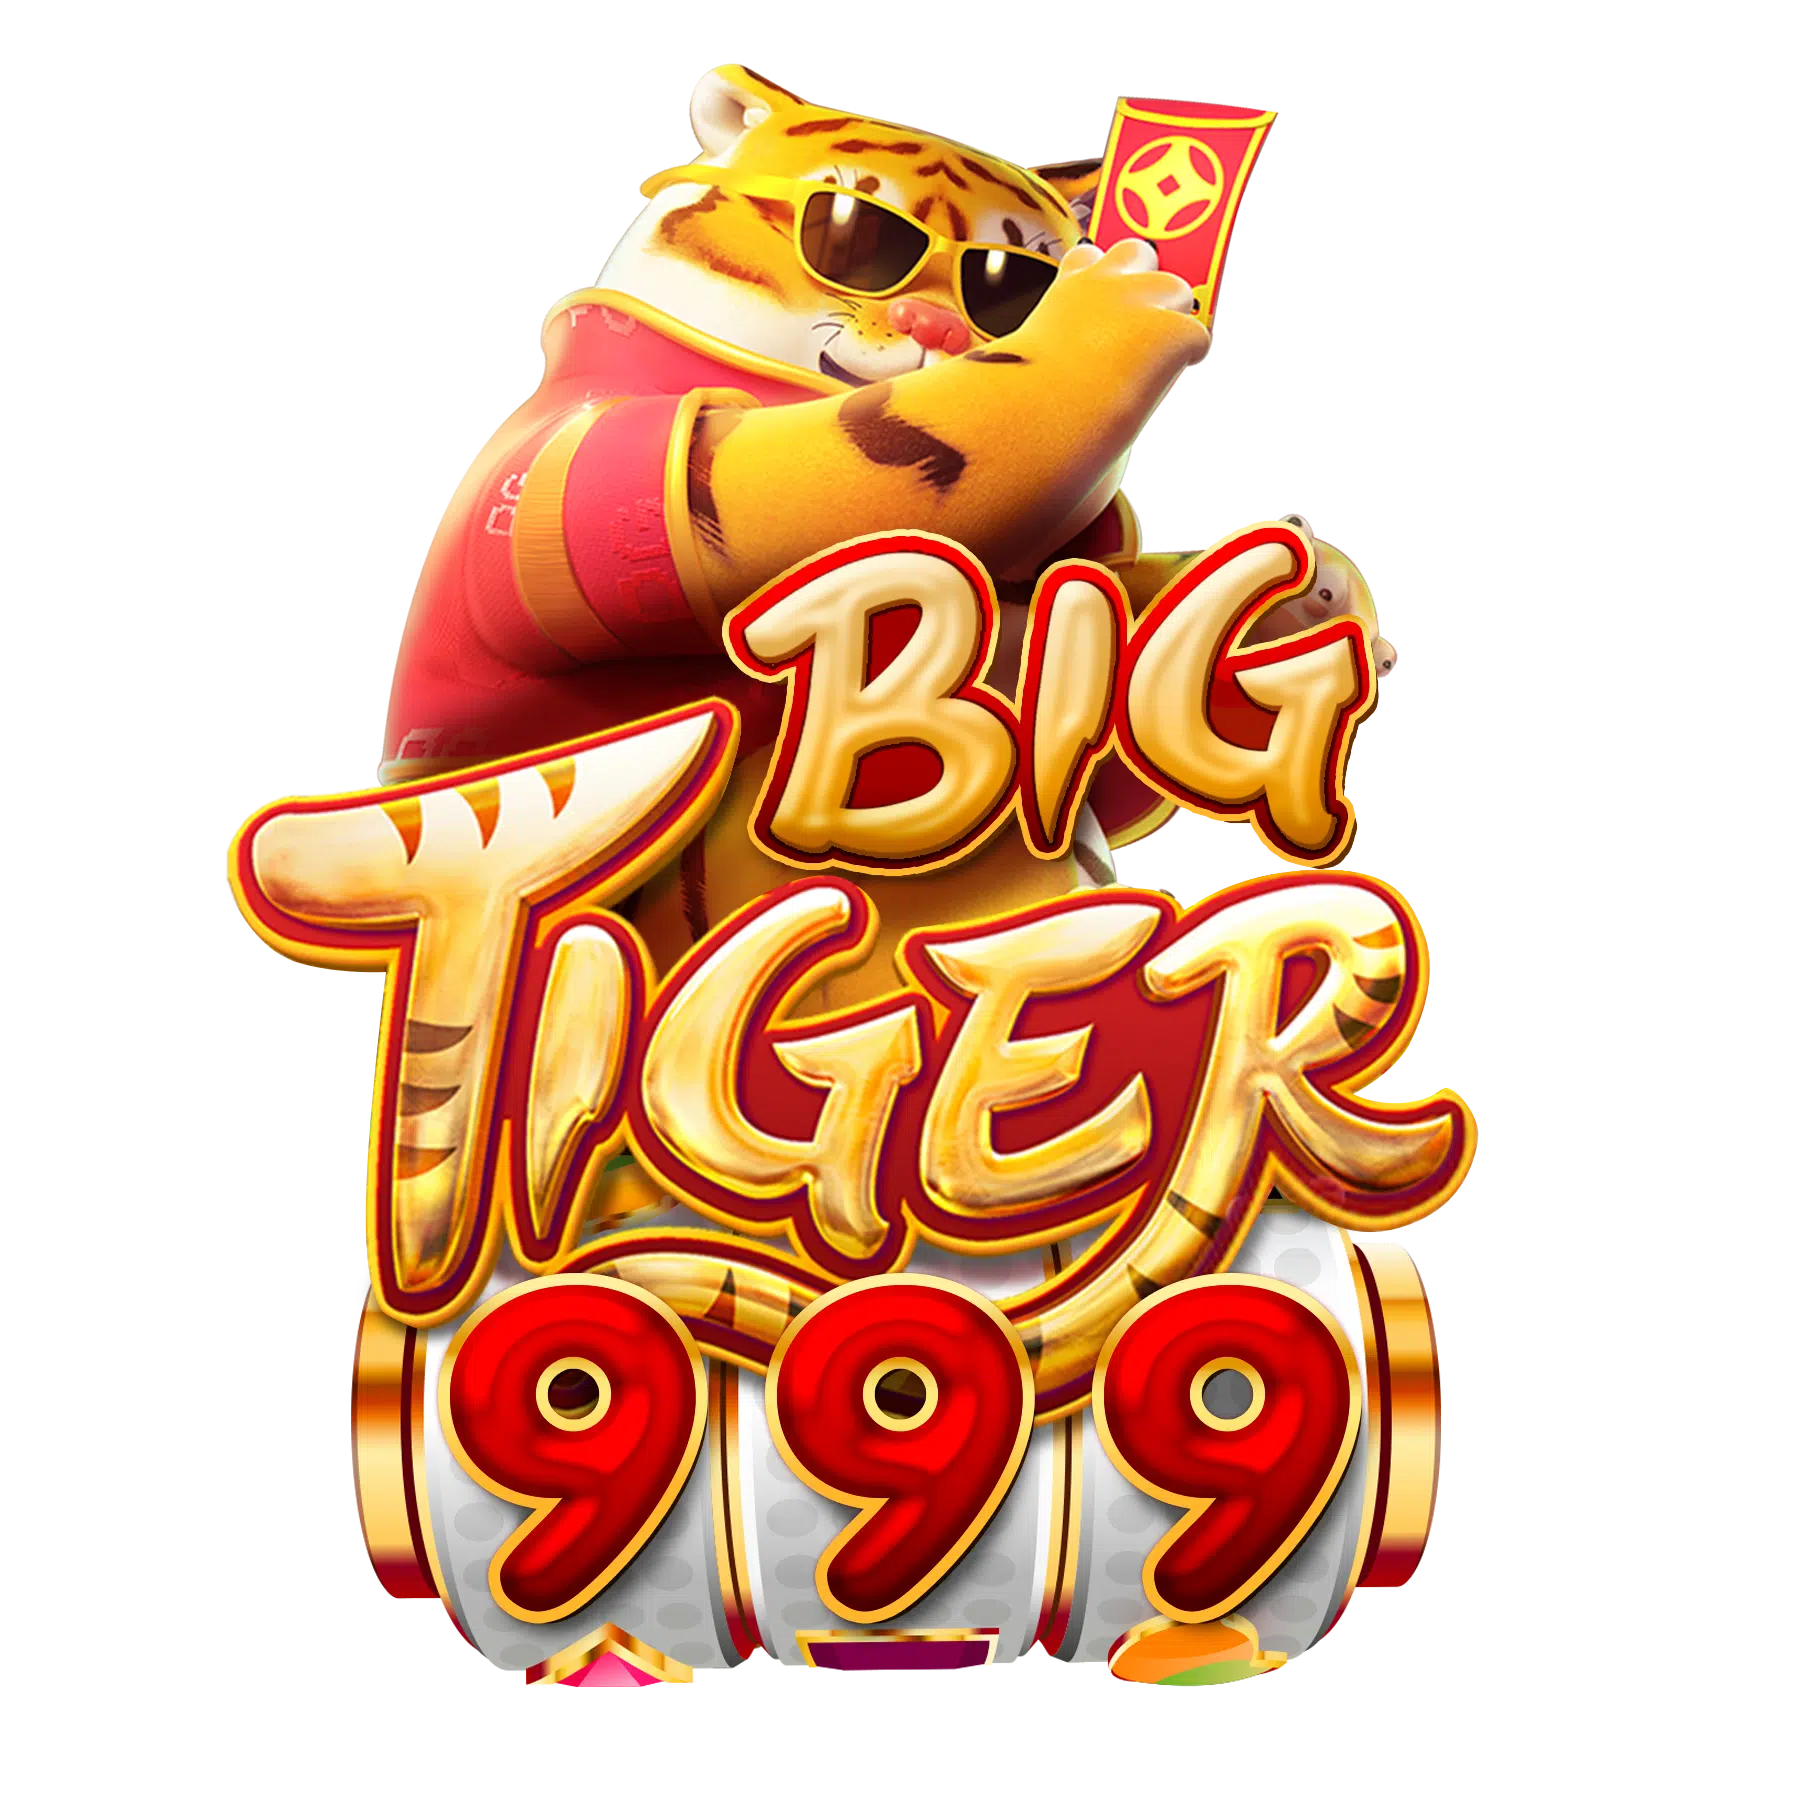 BigTiger999